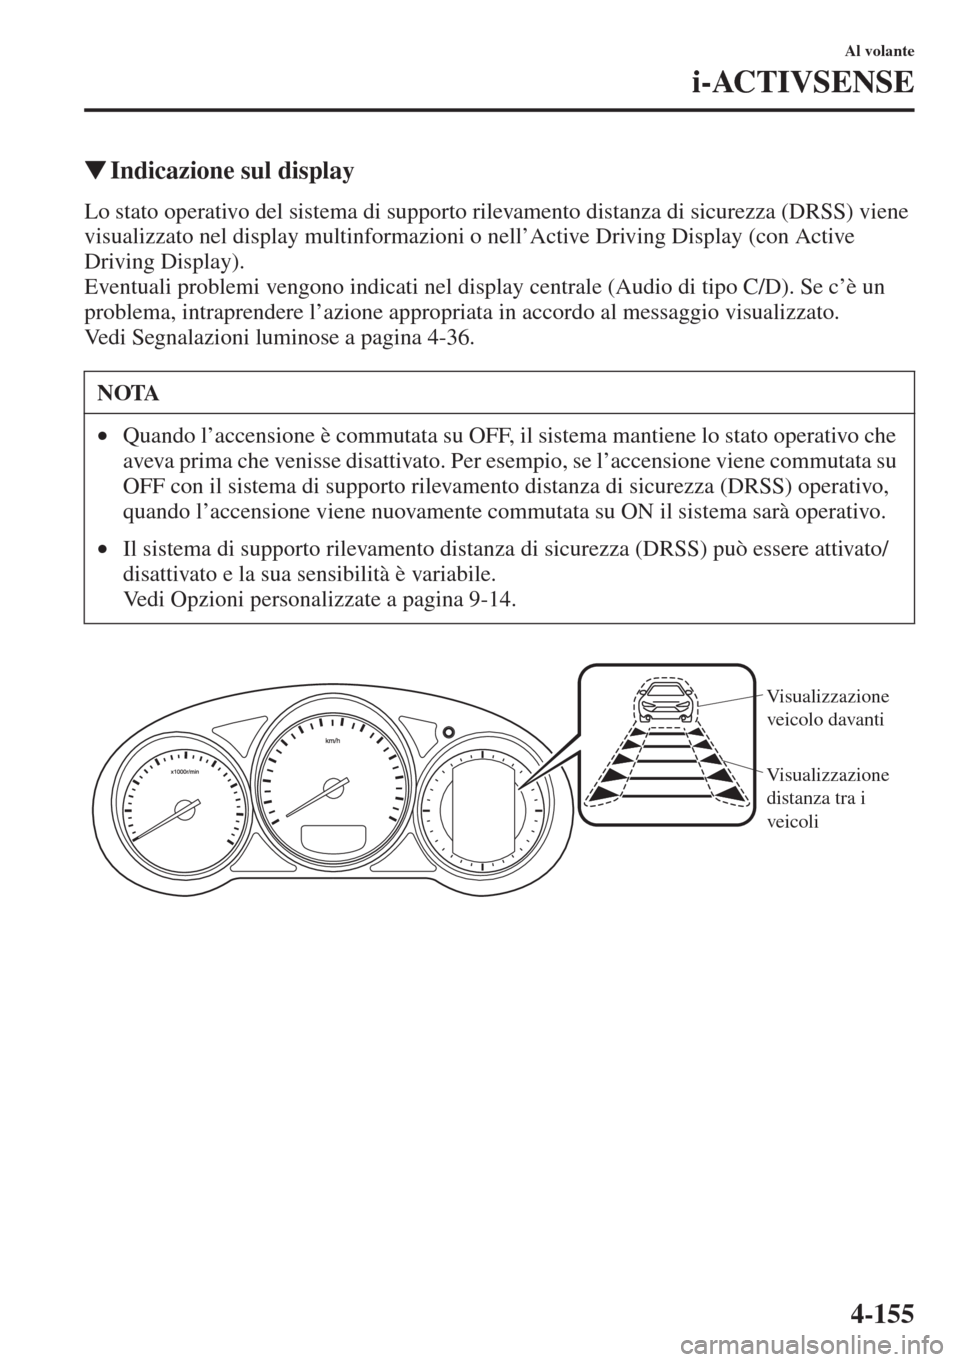 MAZDA MODEL 6 2015  Manuale del proprietario (in Italian)  4-155
Al volante
i-ACTIVSENSE
�WIndicazione sul display
Lo stato operativo del sistema di supporto rilevamento distanza di sicurezza (DRSS) viene 
visualizzato nel display multinformazioni o nell’Ac